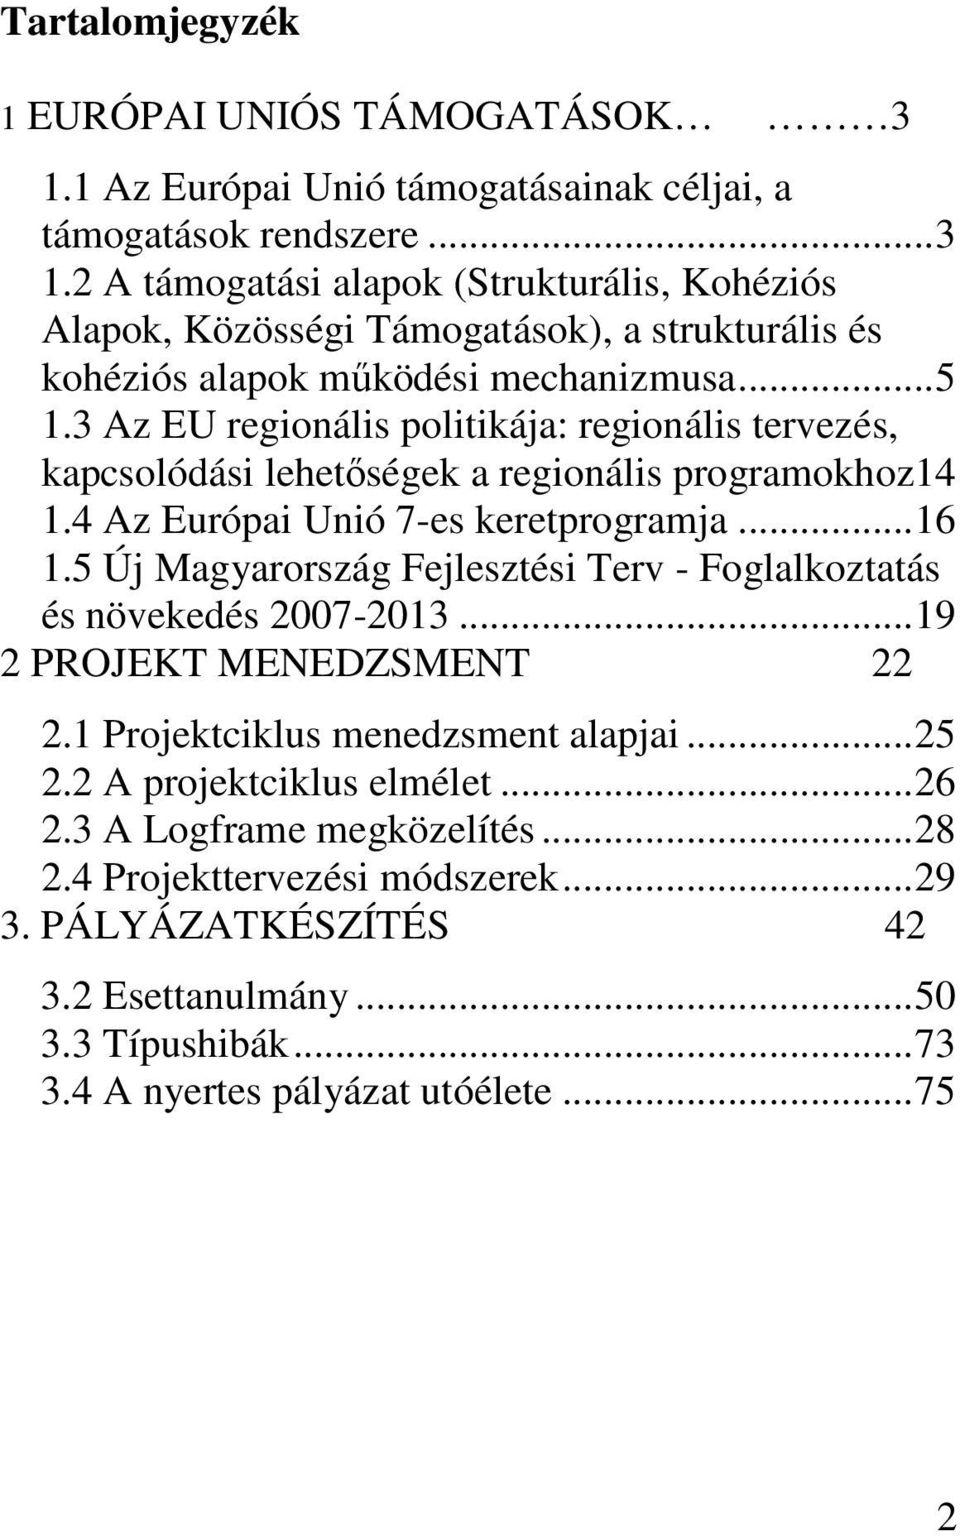 5 Új Magyarország Fejlesztési Terv - Foglalkoztatás és növekedés 2007-2013... 19 2 PROJEKT MENEDZSMENT 22 2.1 Projektciklus menedzsment alapjai... 25 2.2 A projektciklus elmélet... 26 2.